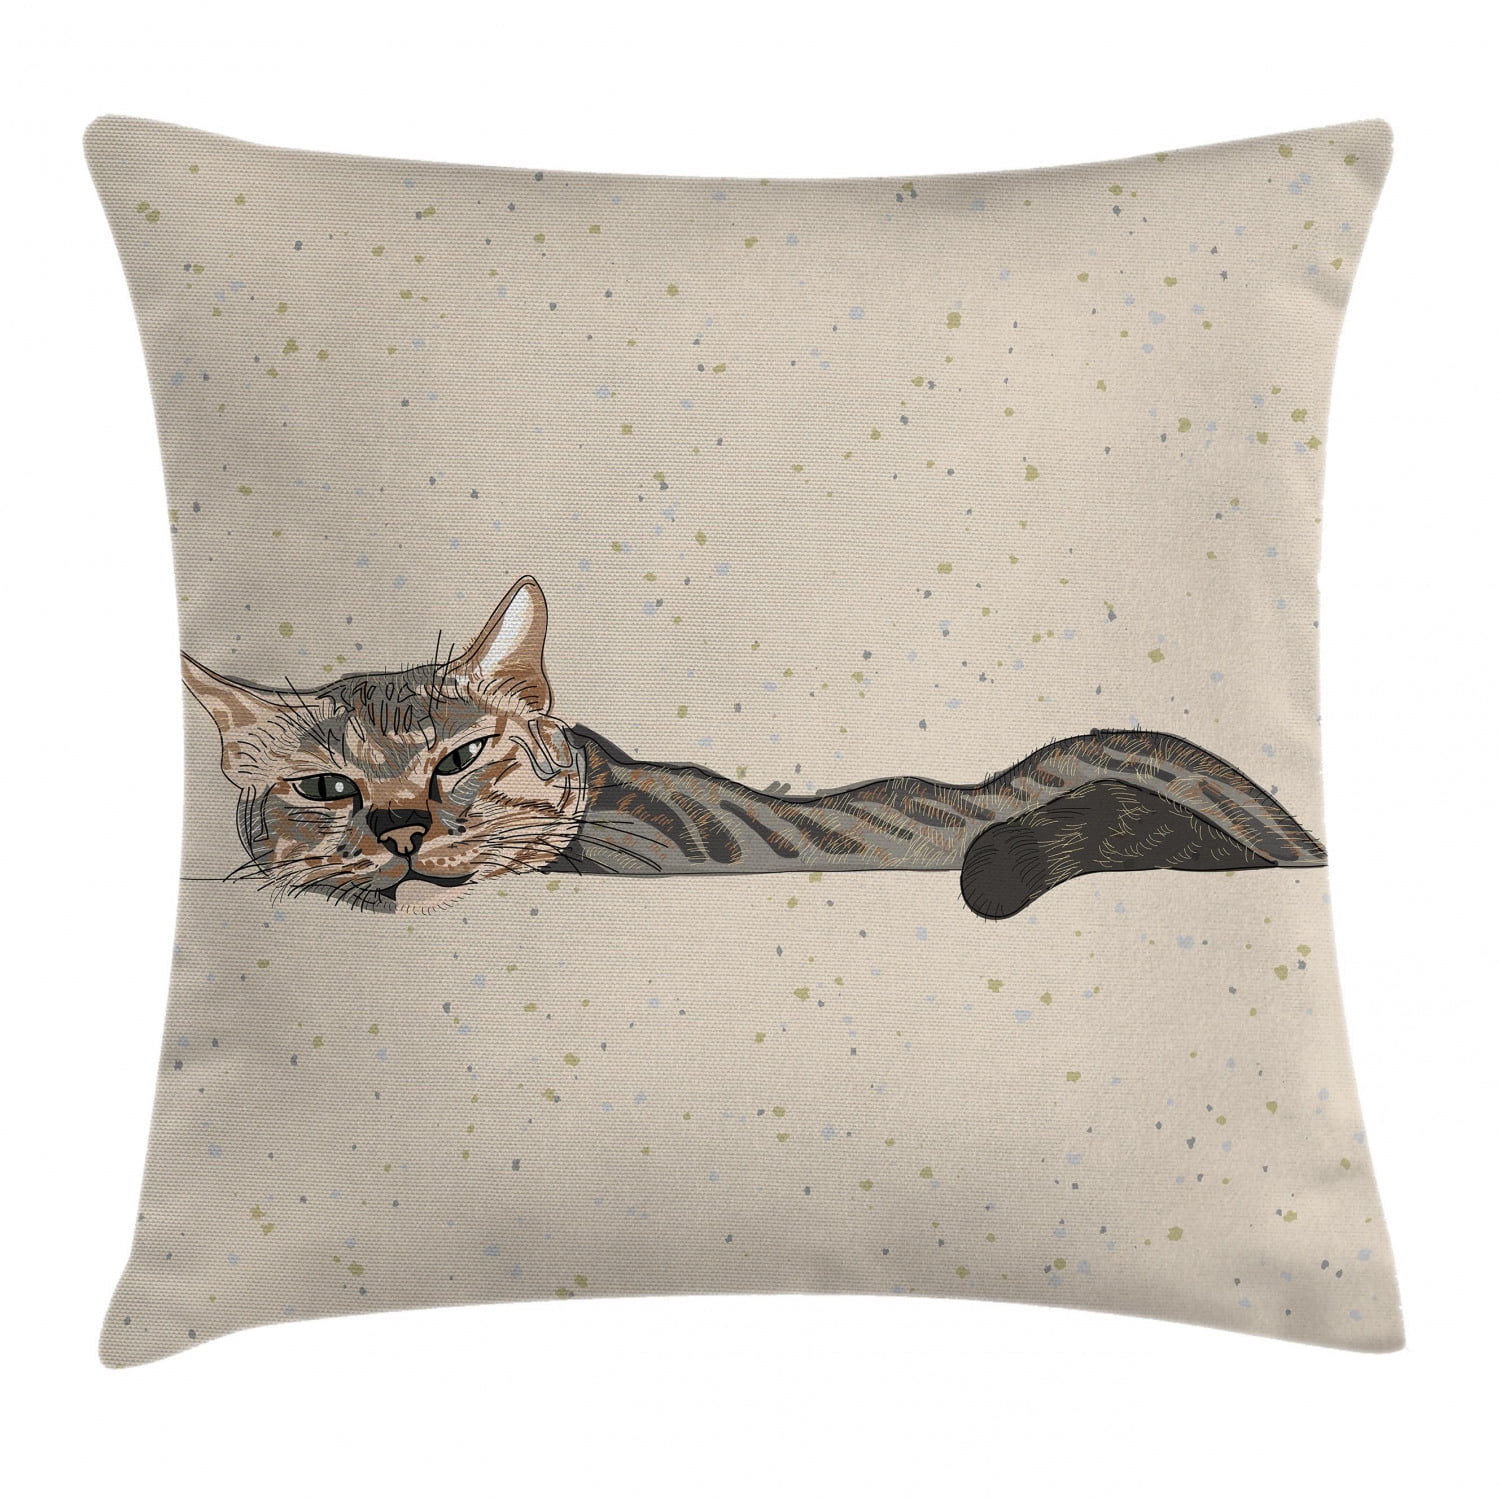 Joyful Kitty Throw Pillow